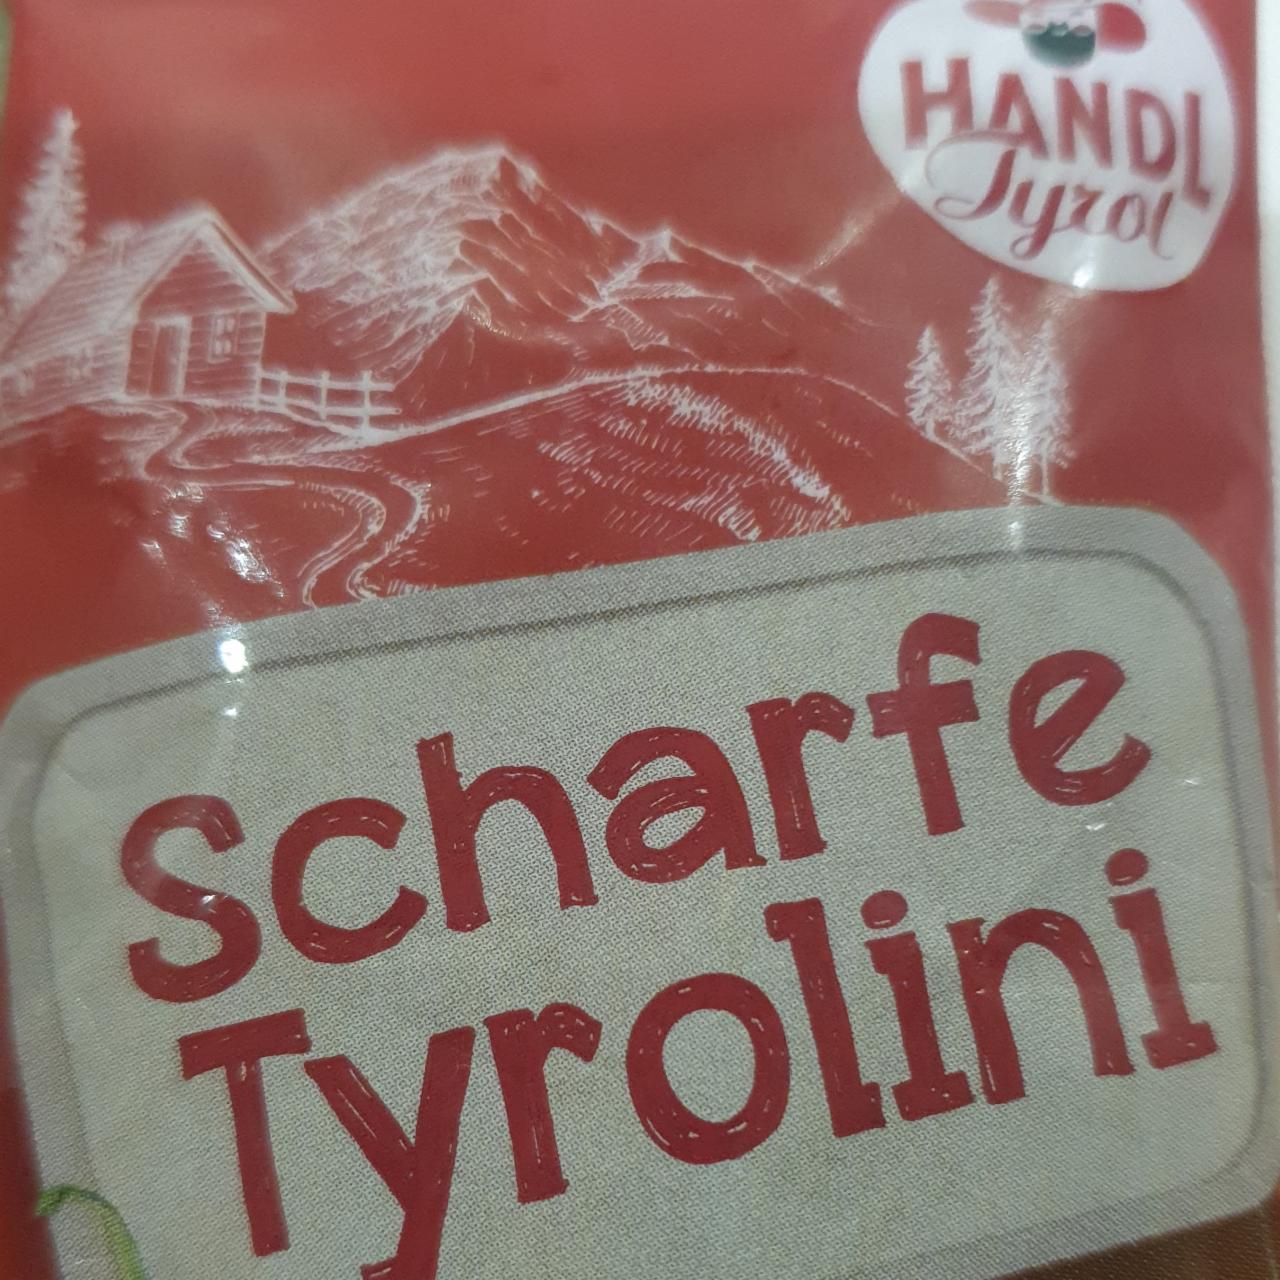 Фото - Пряні Tyrolini Chili Handl Tyrol